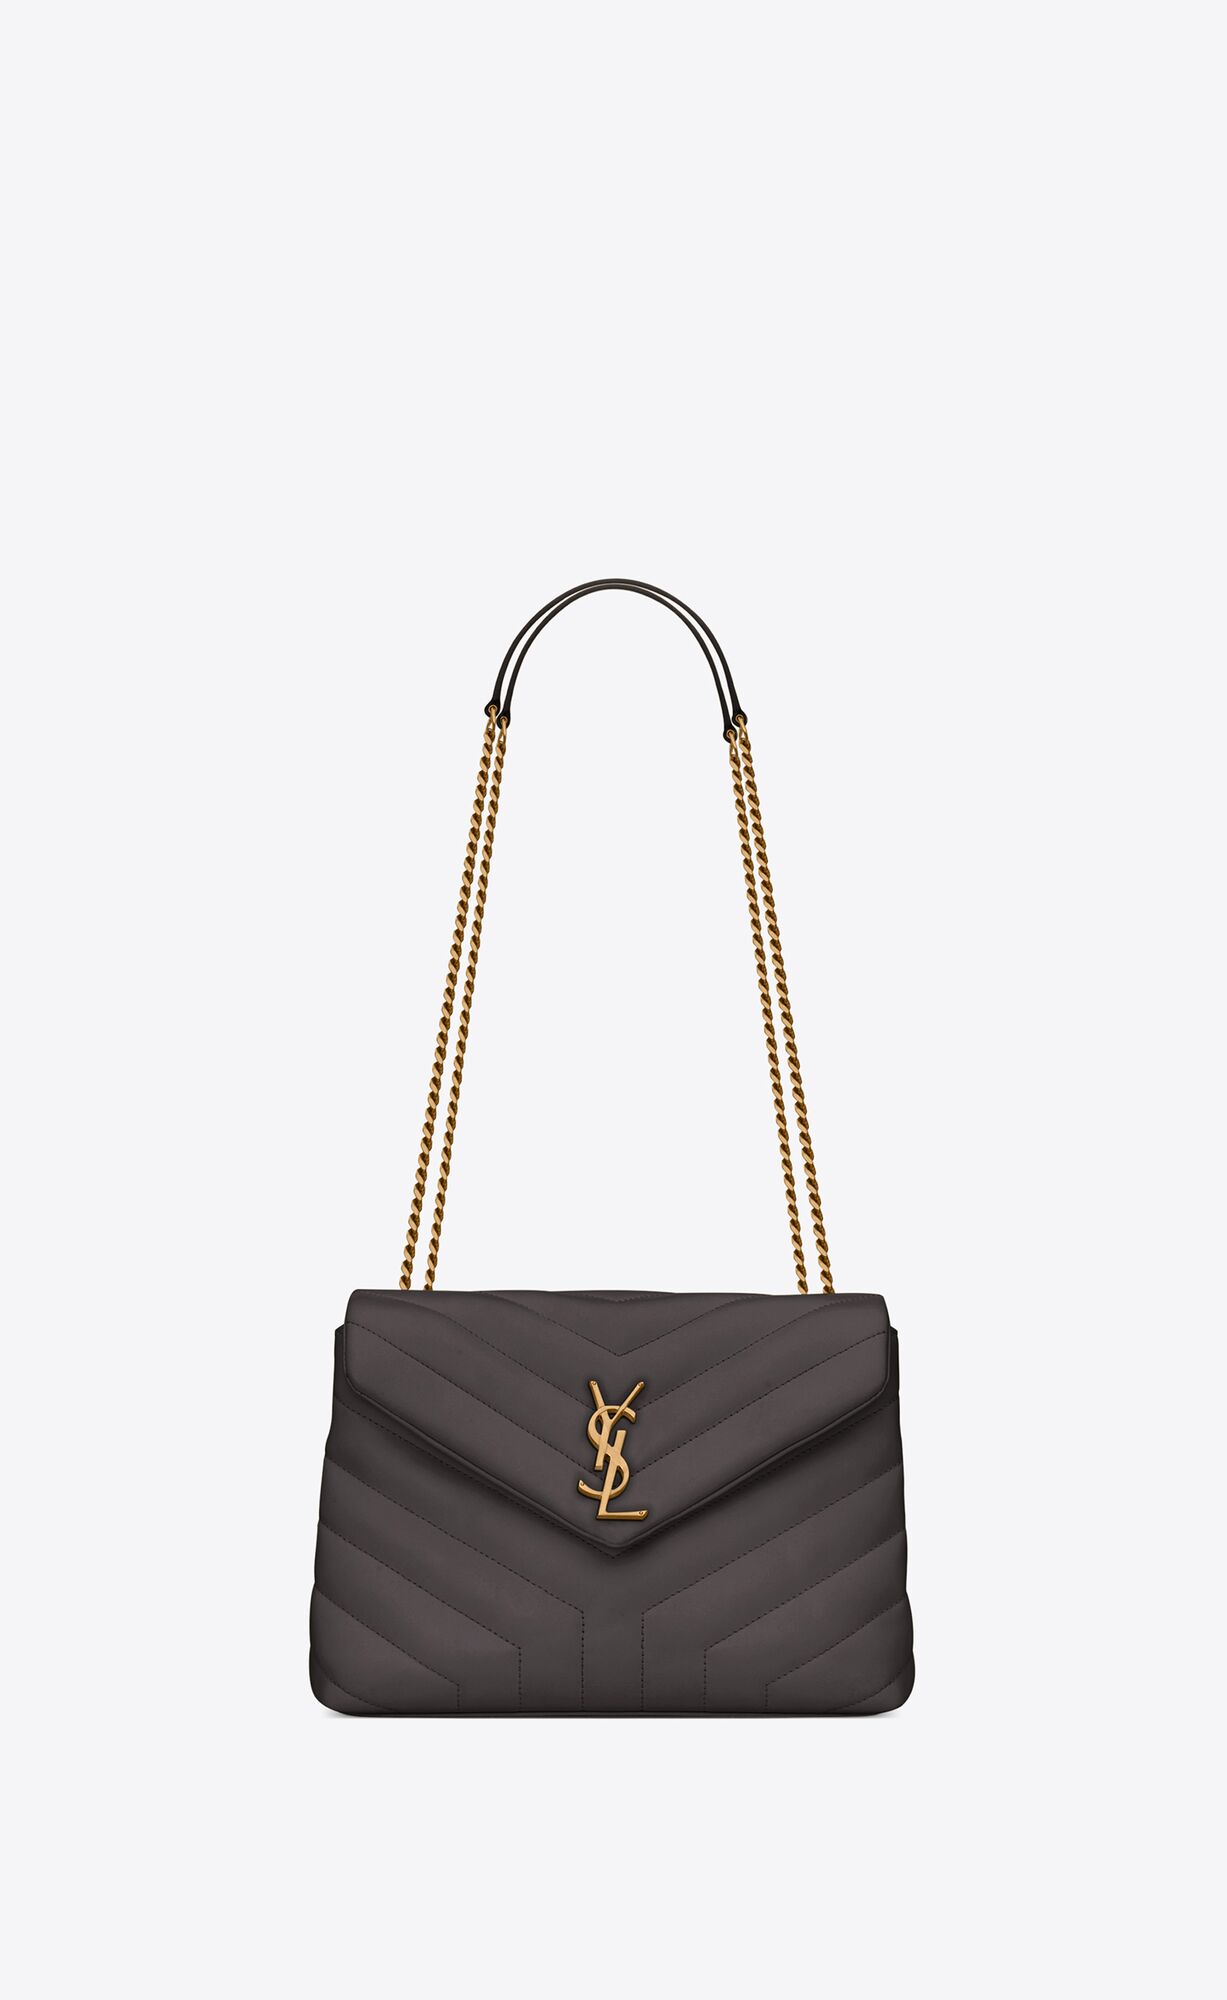 Saint Laurent Loulou Small Bag In Matelassé “y” Leather – Storm – 494699DV7271112